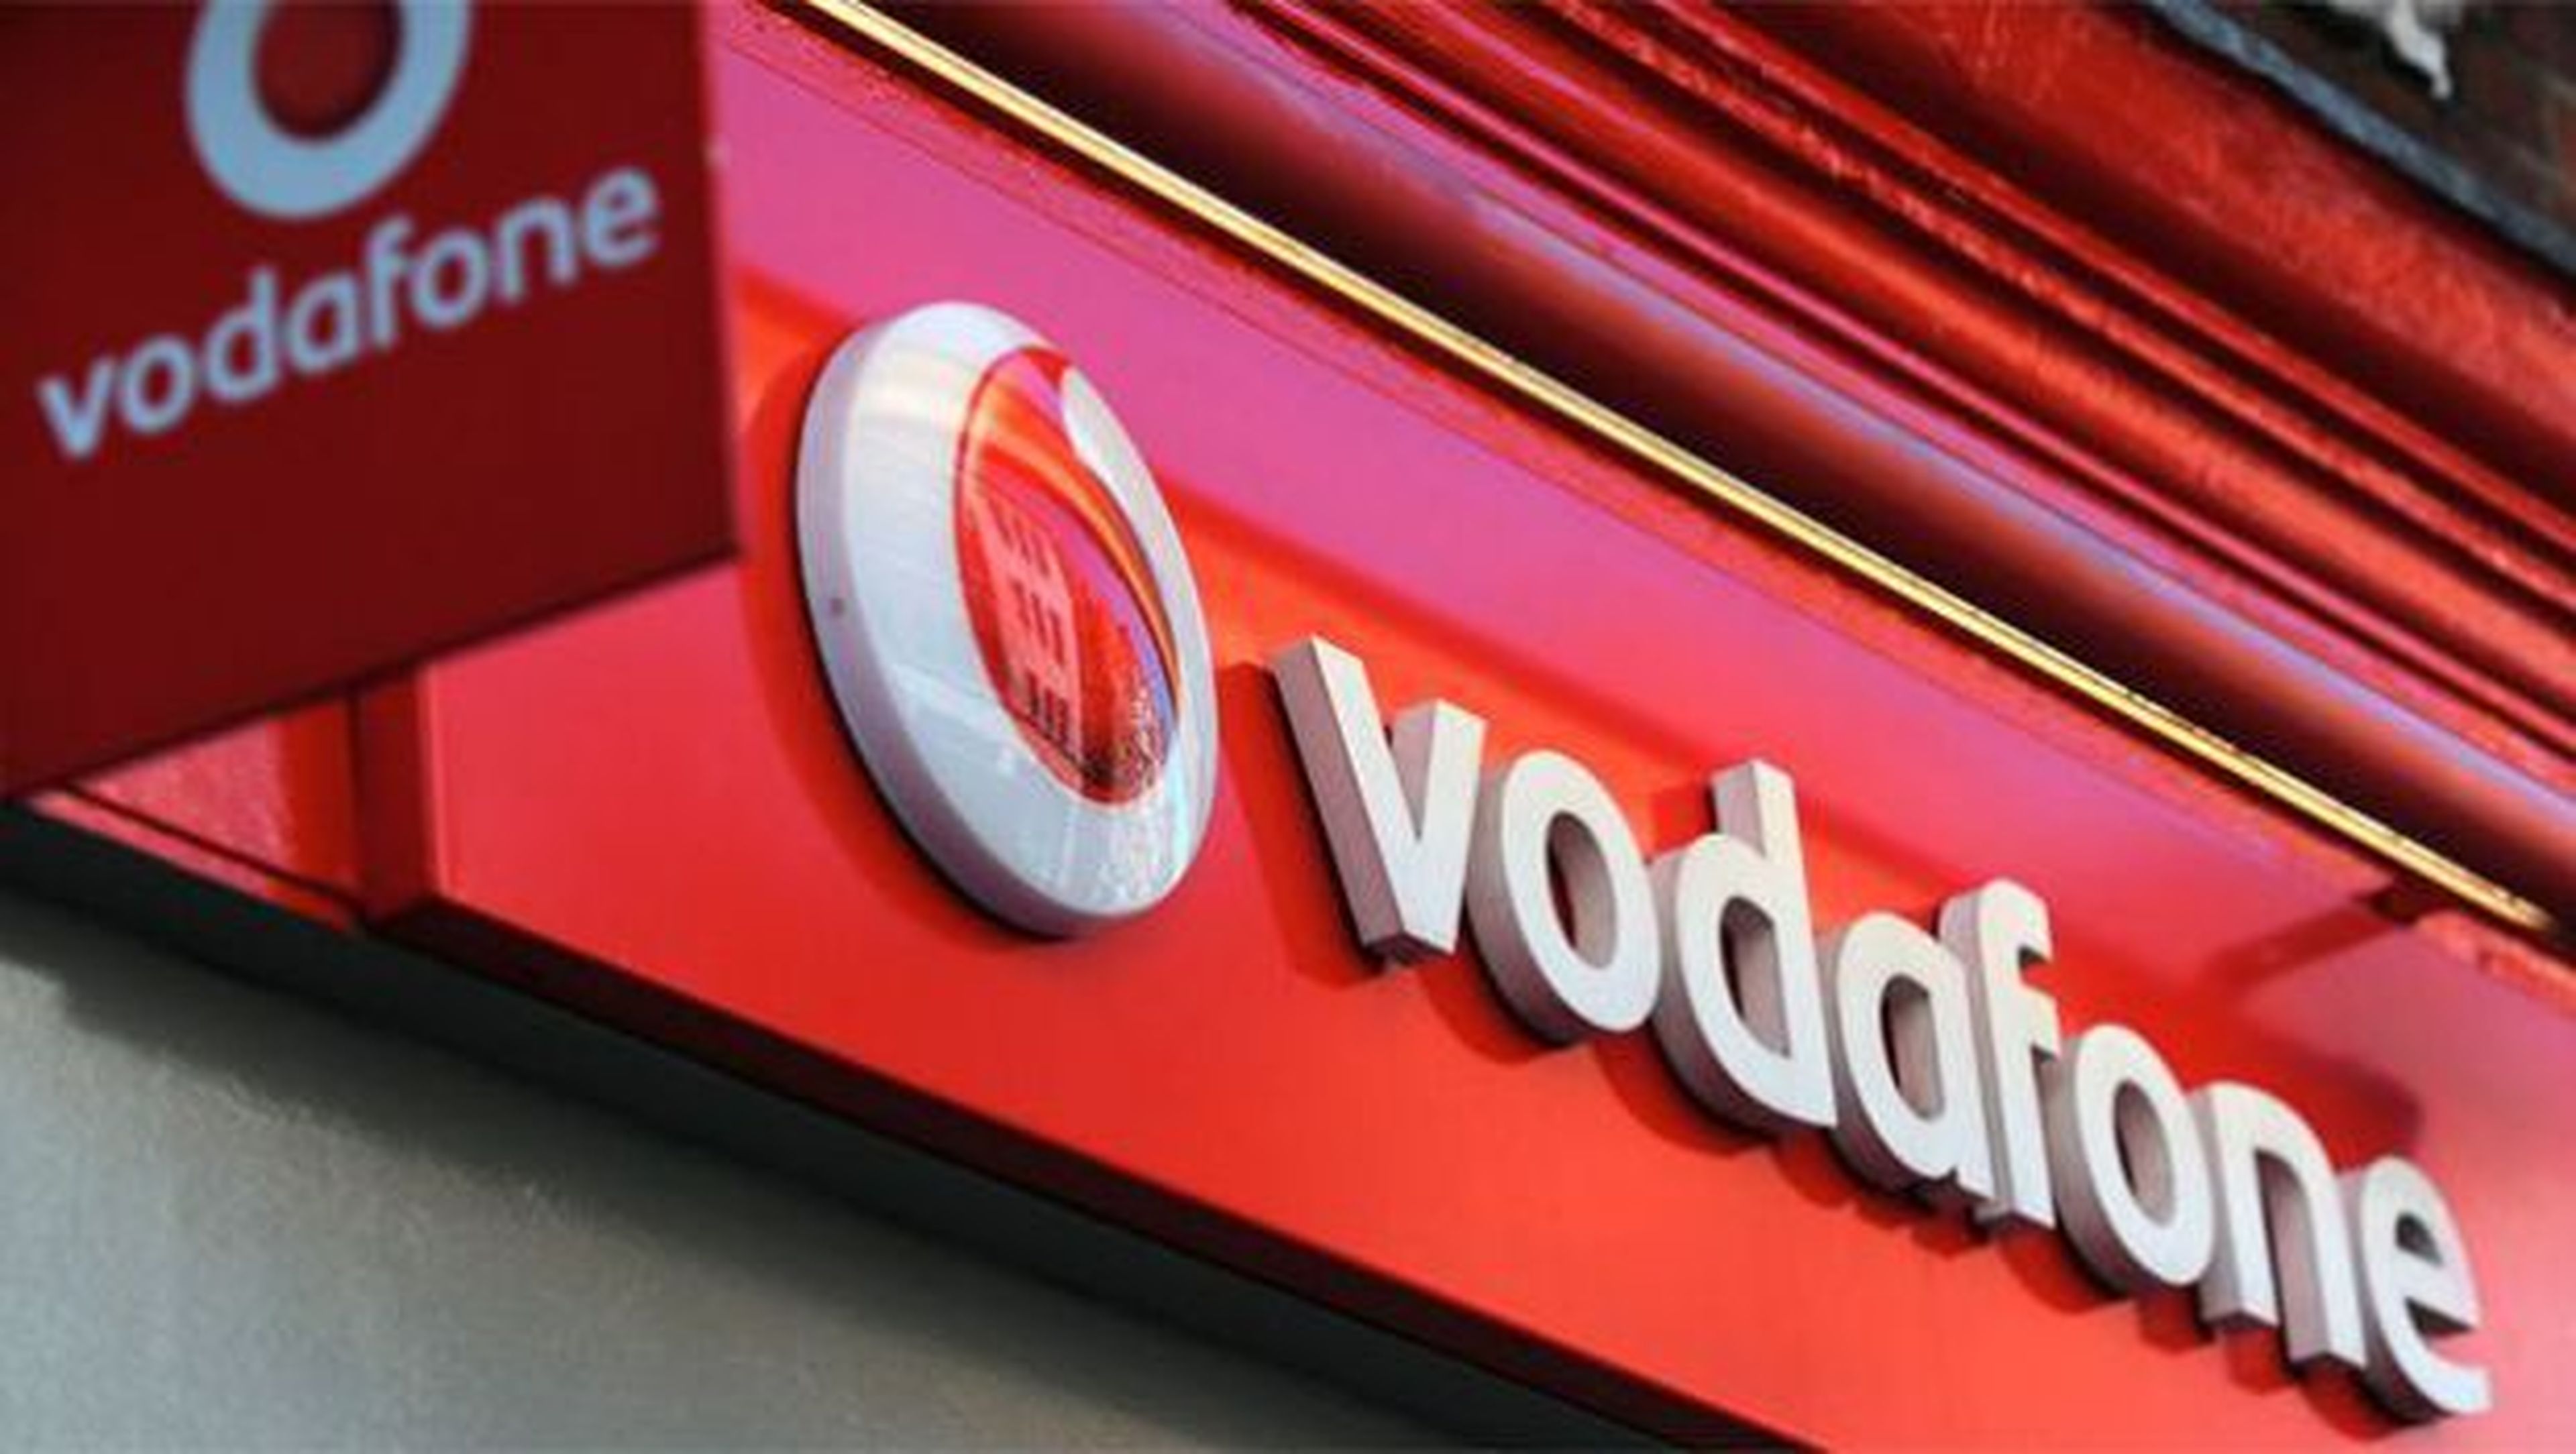 Vodafone sube precios abril 2018